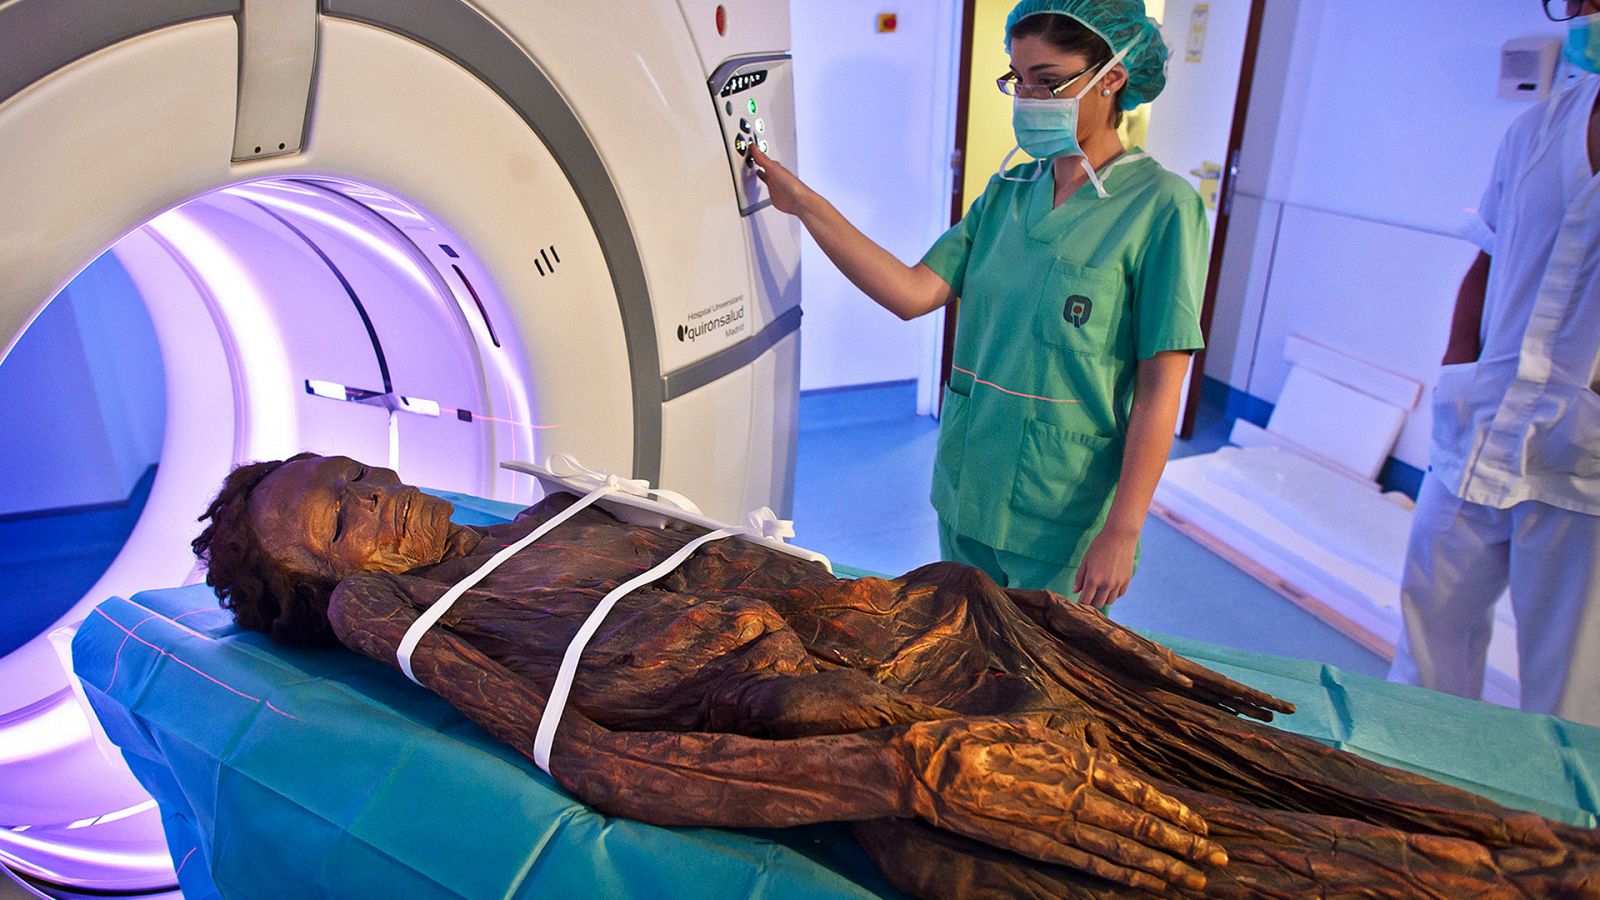 Somos documentales - Autopsia, la historia secreta de las momias: La momia dorada - Ver ahora